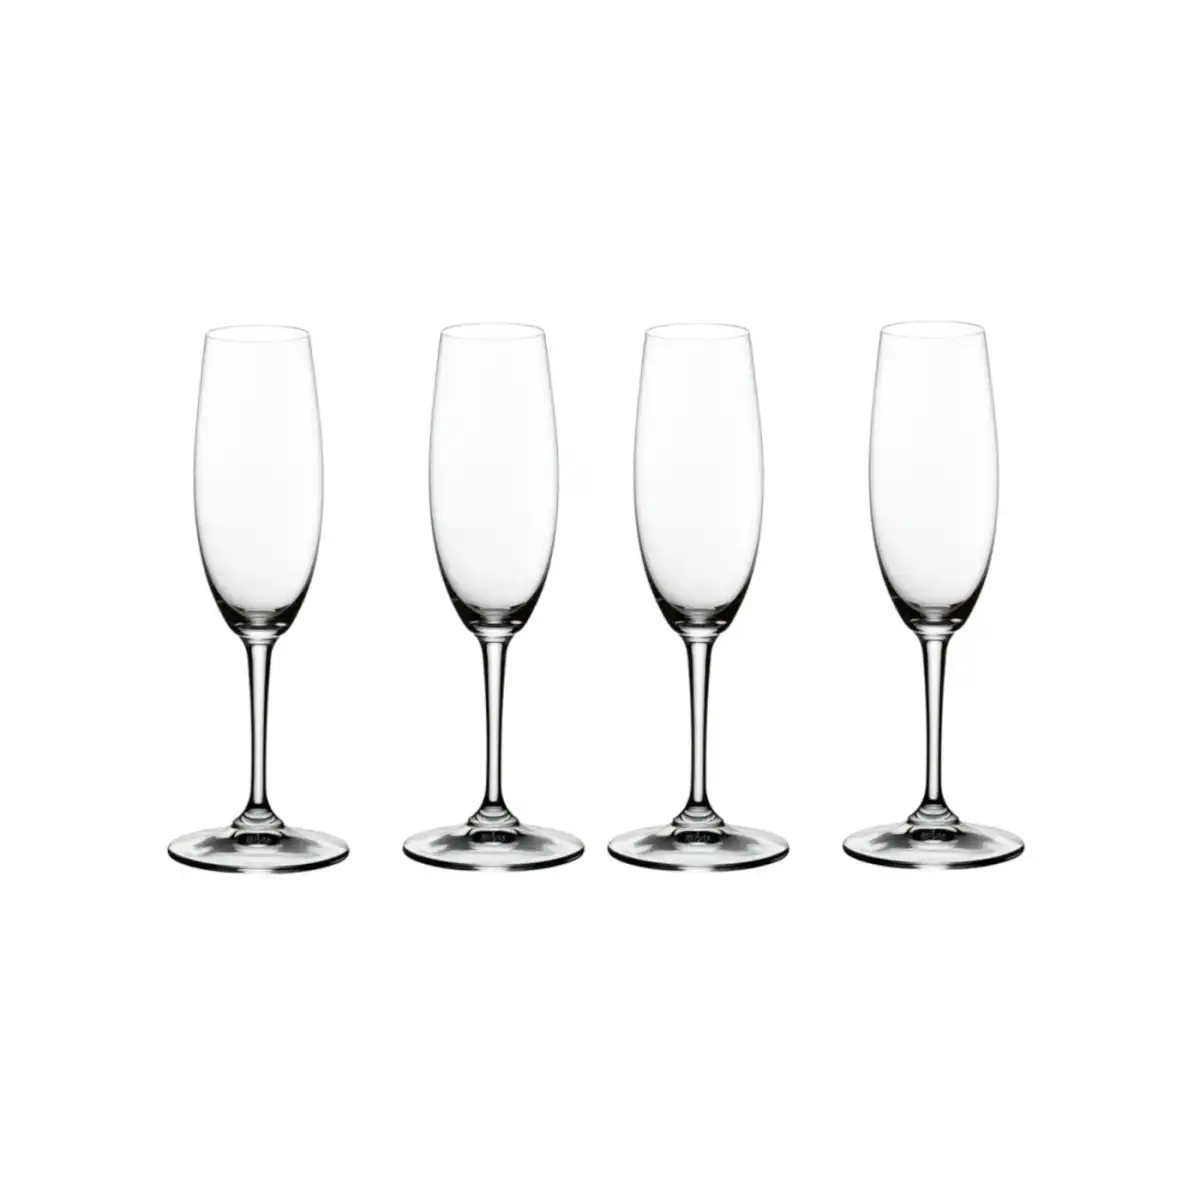 Riedel Degustazione Champagne Glass Set of 4